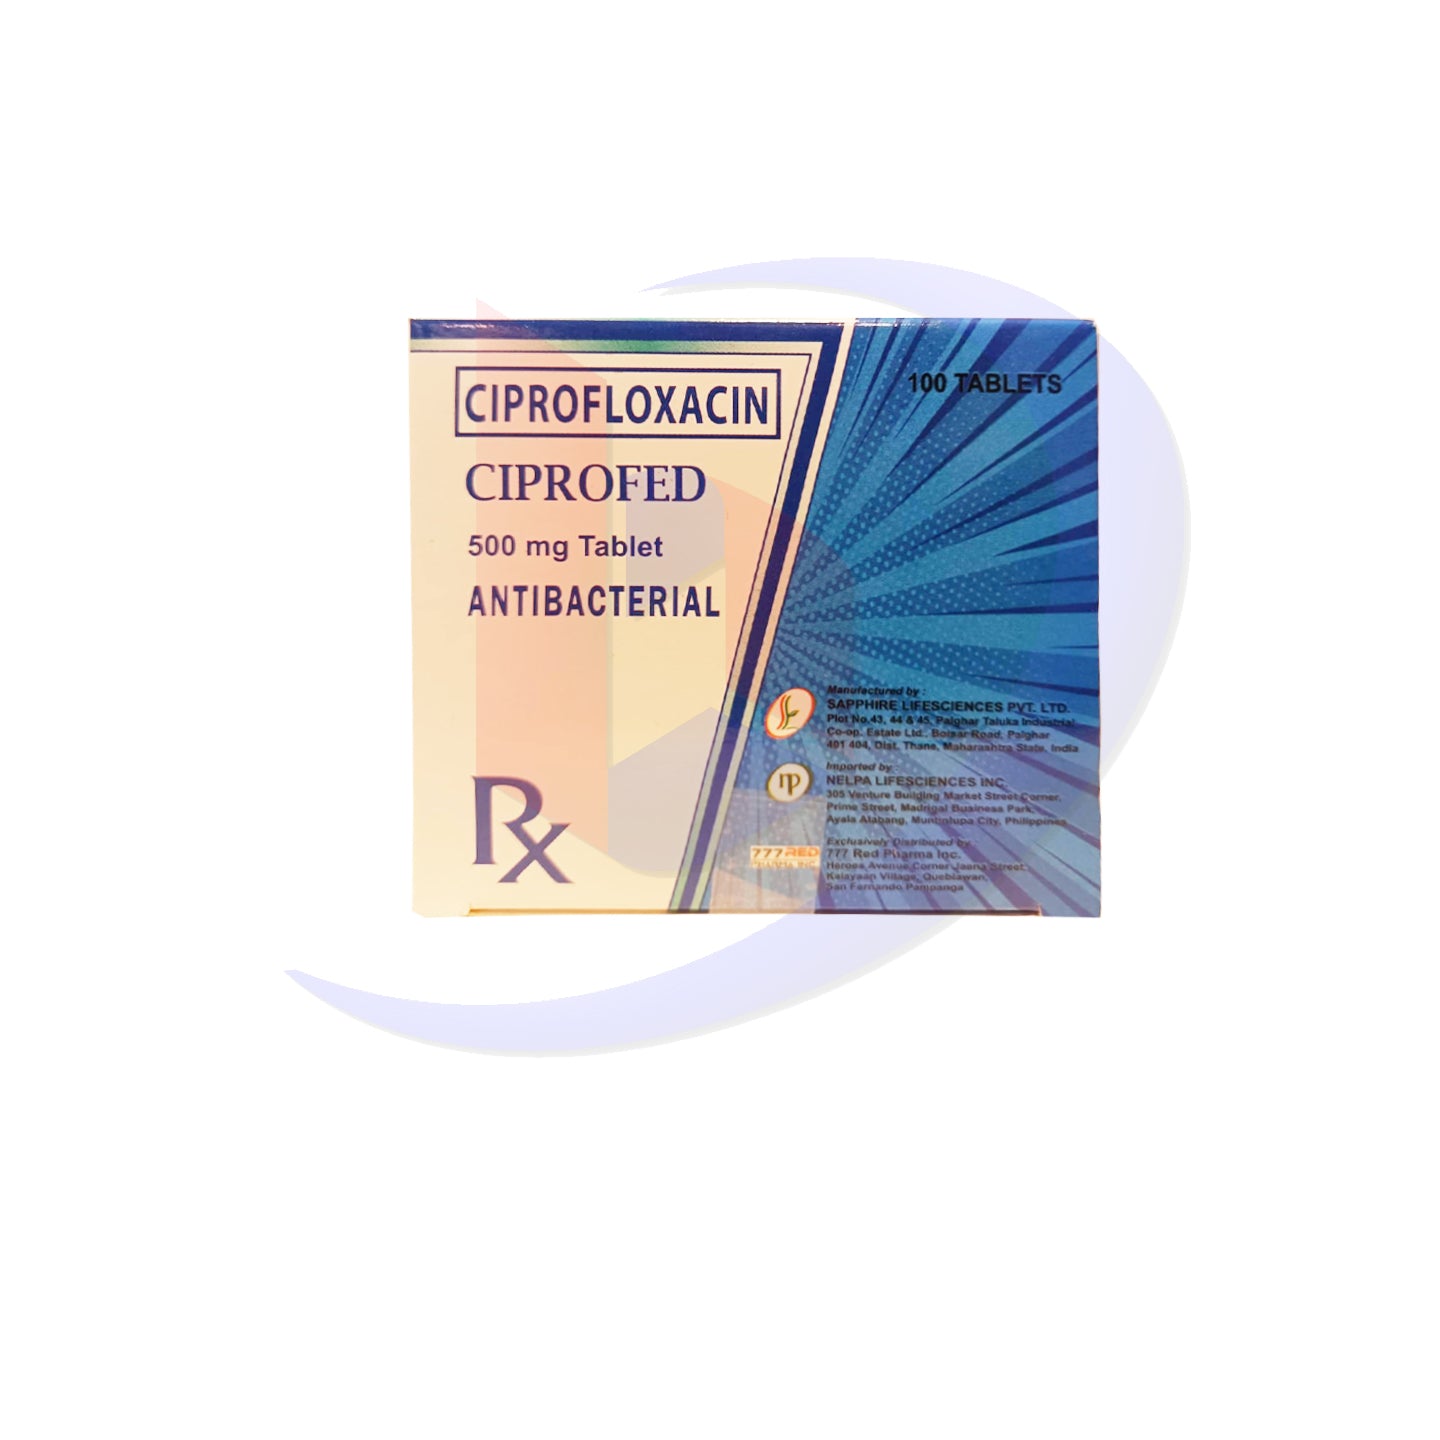 Ciprofloxacin (Ciprofed) 500mg Tablet 100's